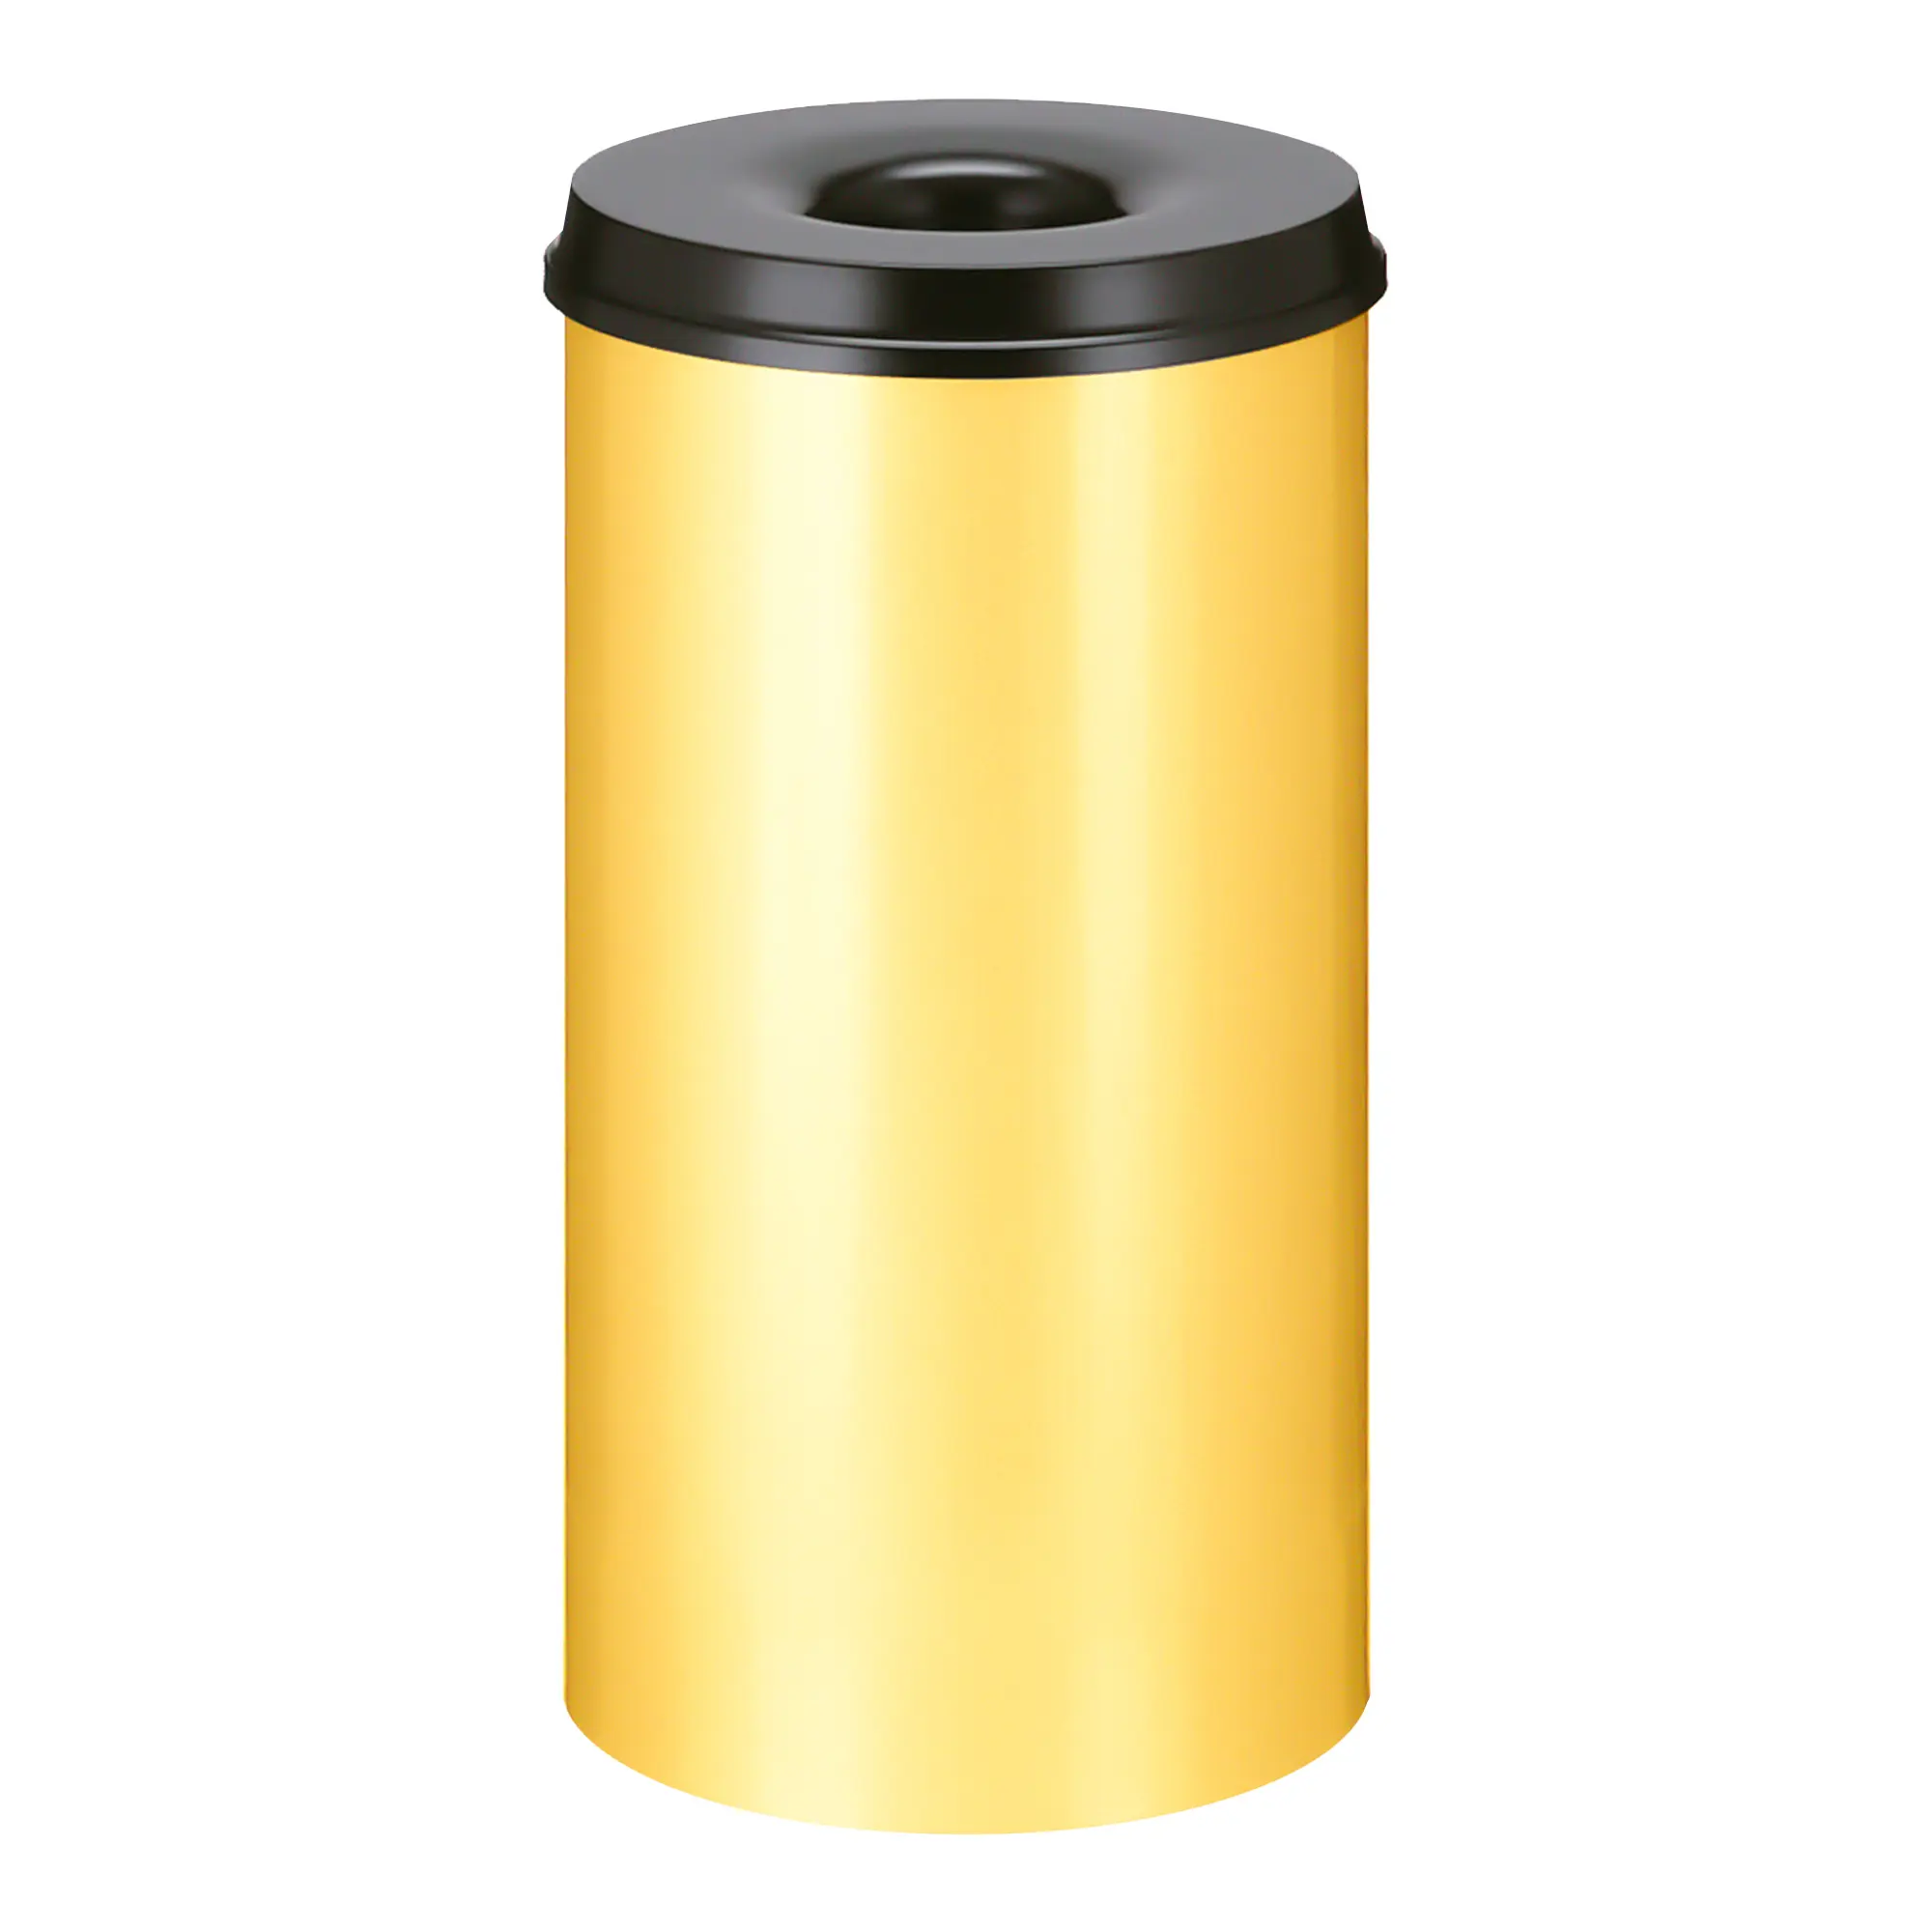 V-Part Feuerlöschender Papierkorb 50 Liter gelb/schwarz 31014330_1